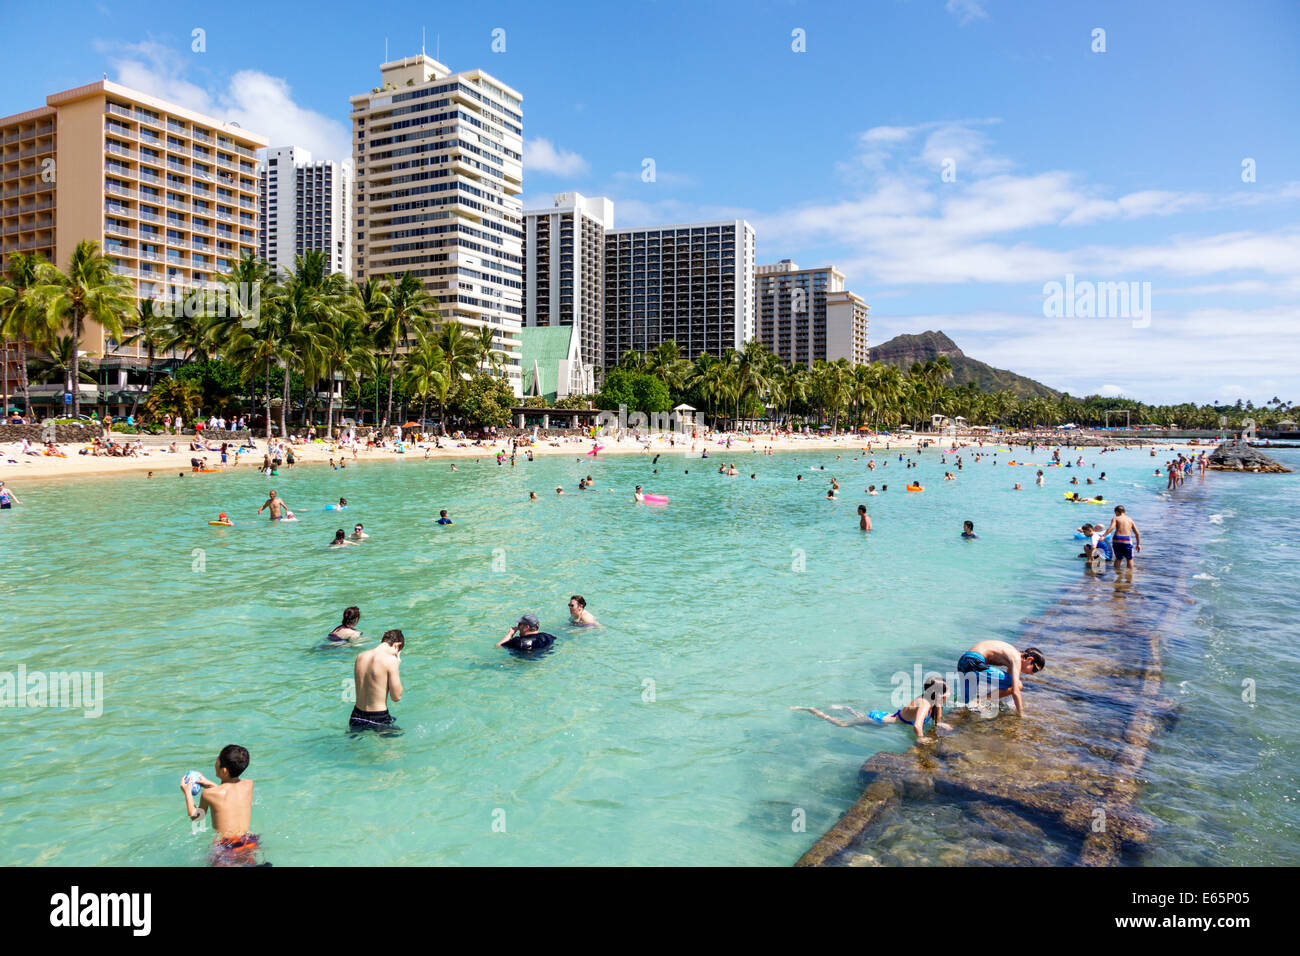 Honolulu Hawaii, Oahu, Hawaiian, Waikiki Beach, Resort, Kuhio Beach State Park, l'eau de l'océan Pacifique, les baigneurs de soleil, les familles, bondés, élevé, bâtiments, hôtel ho Banque D'Images